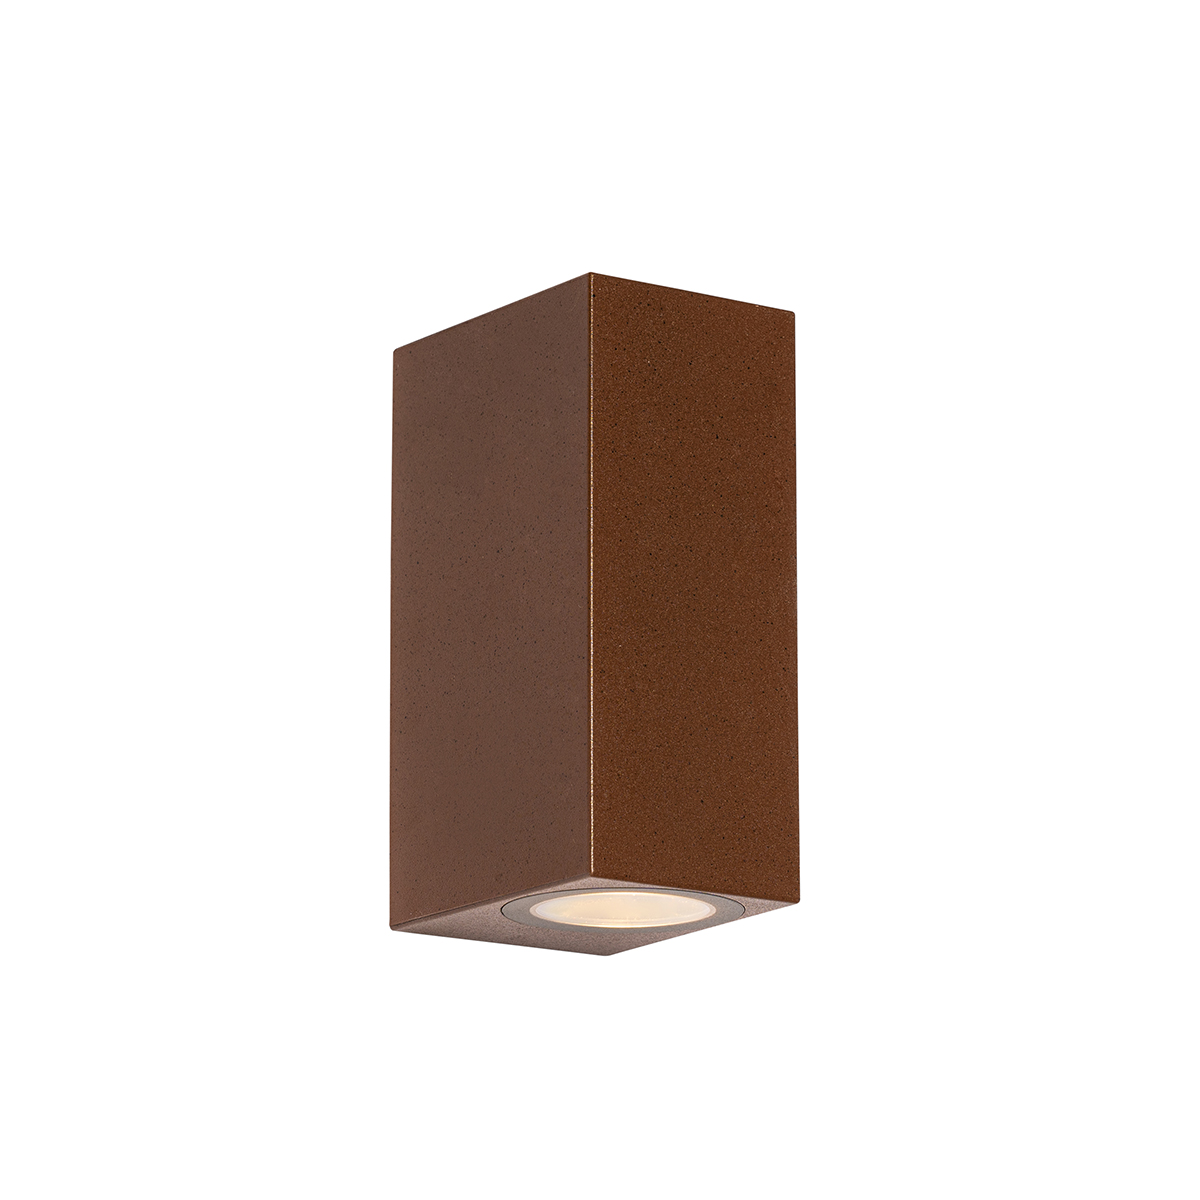 Modern kültéri fali lámpa rozsdabarna műanyag 2 fényű - Baleno